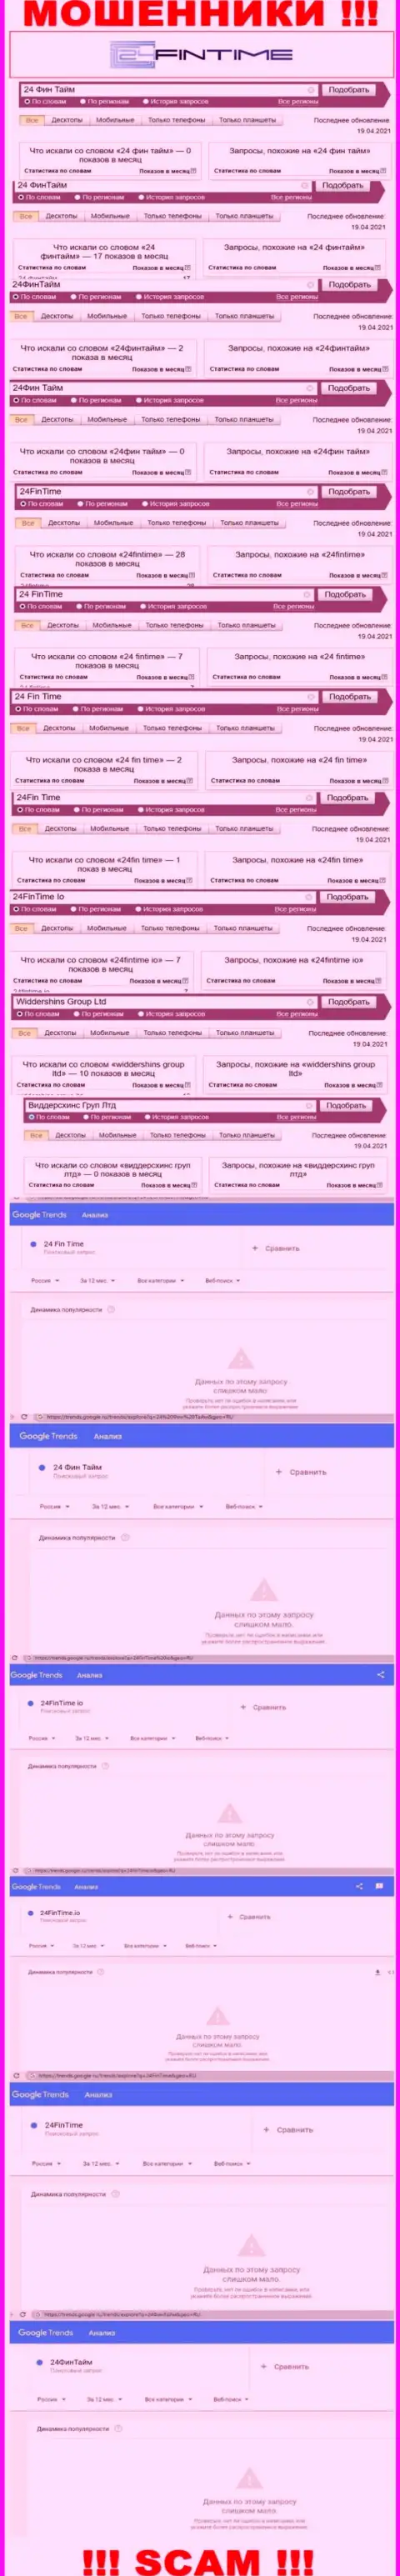 Подробный анализ интернет-запросов по жульнической организации 24 Фин Тайм